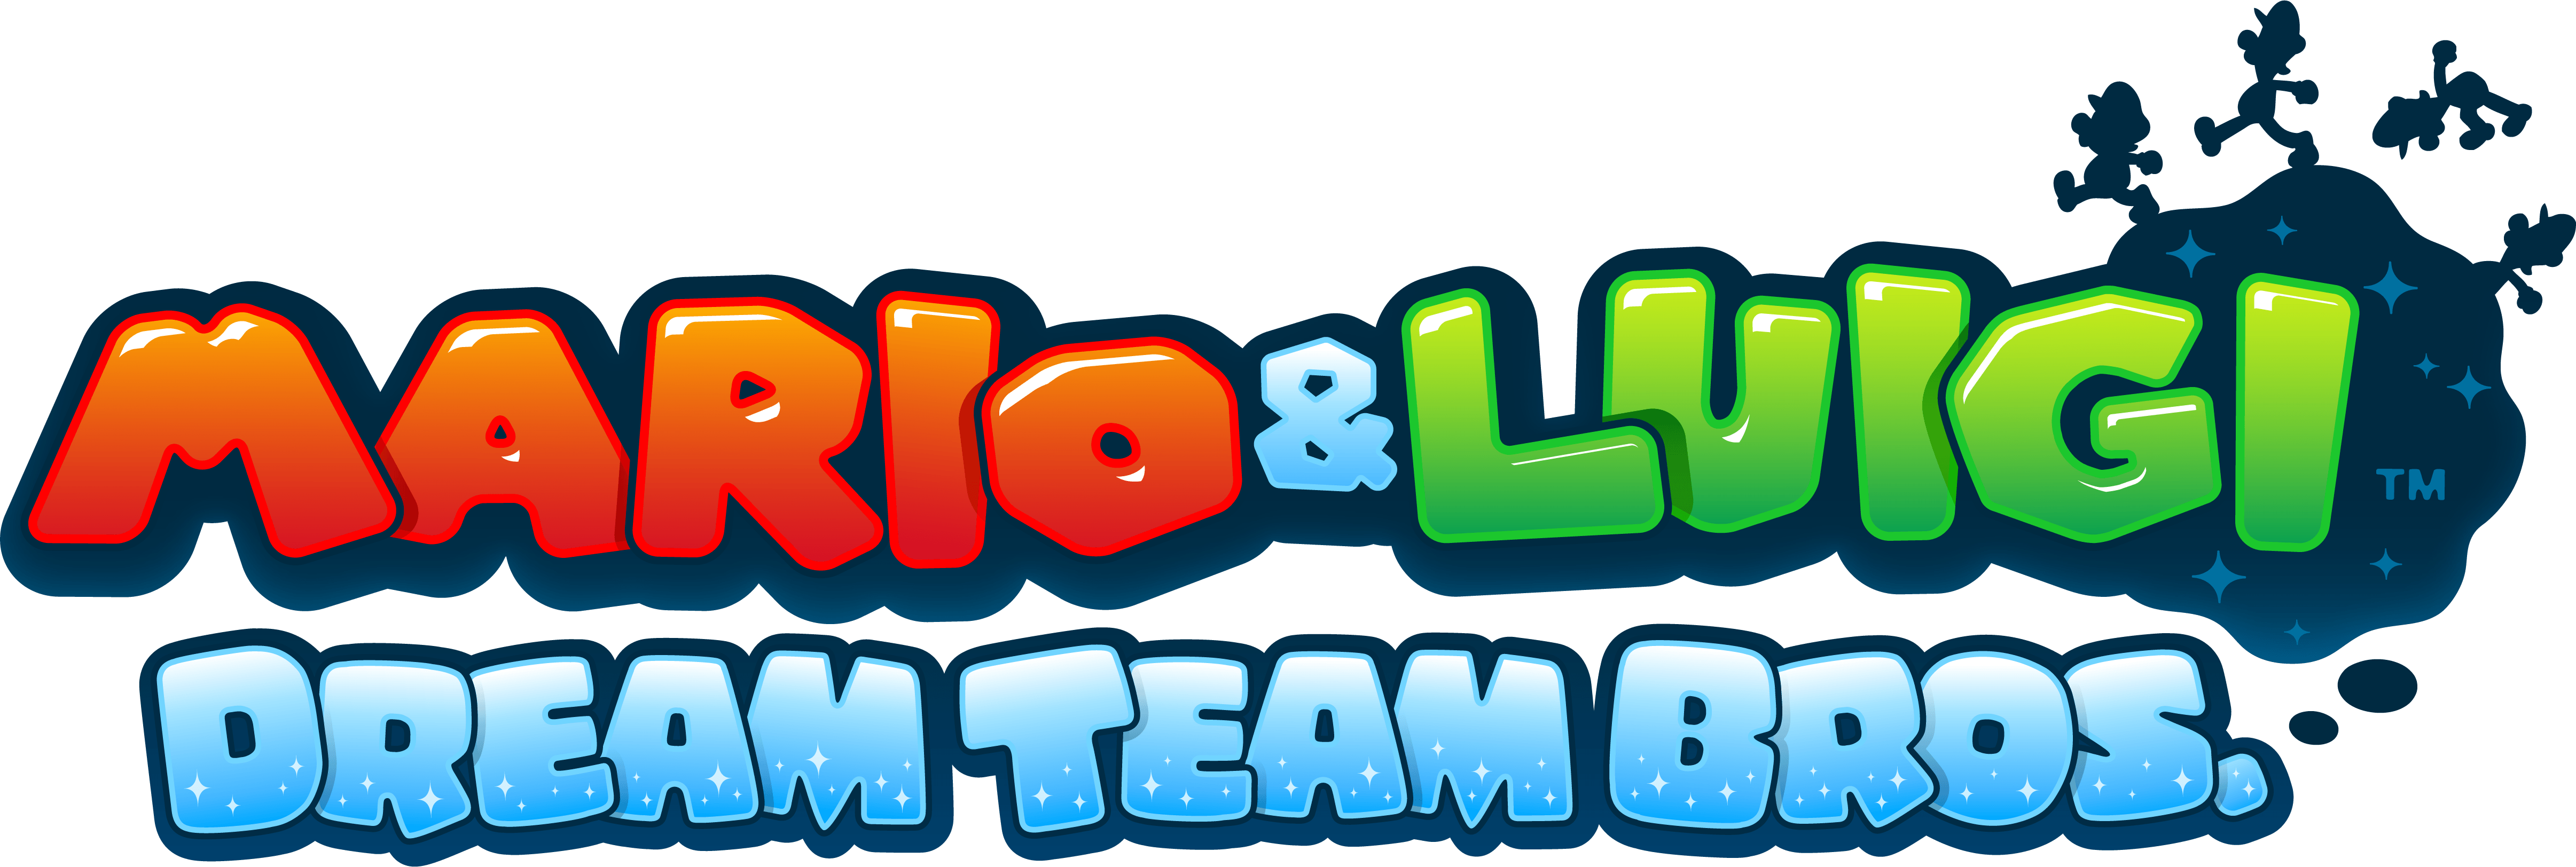 Mario and Luigi Logo - Mario & Luigi: Dream Team (3DS) Artwork